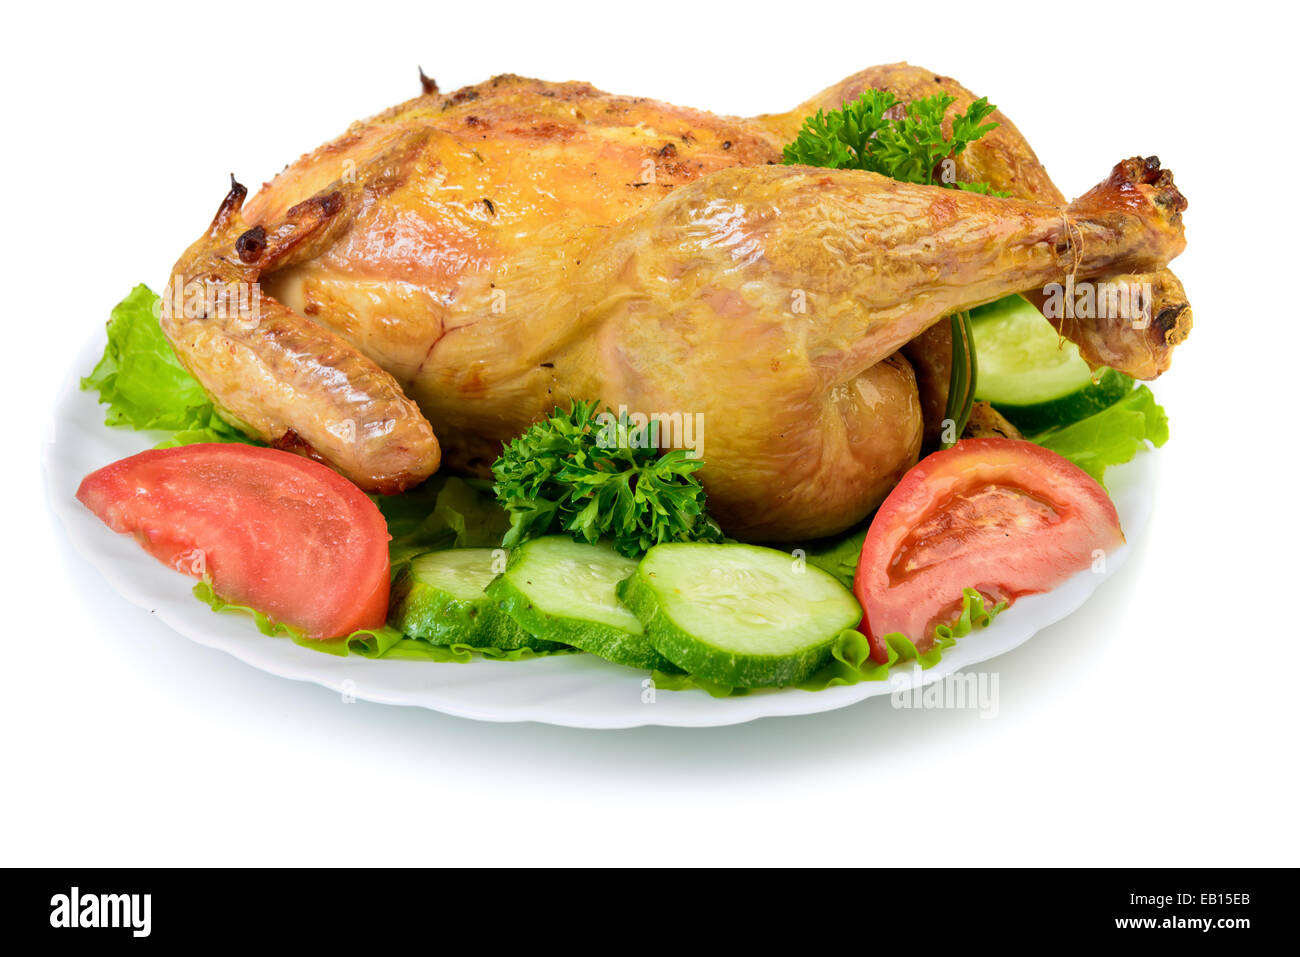 Roast Chicken on dish Stock Photo